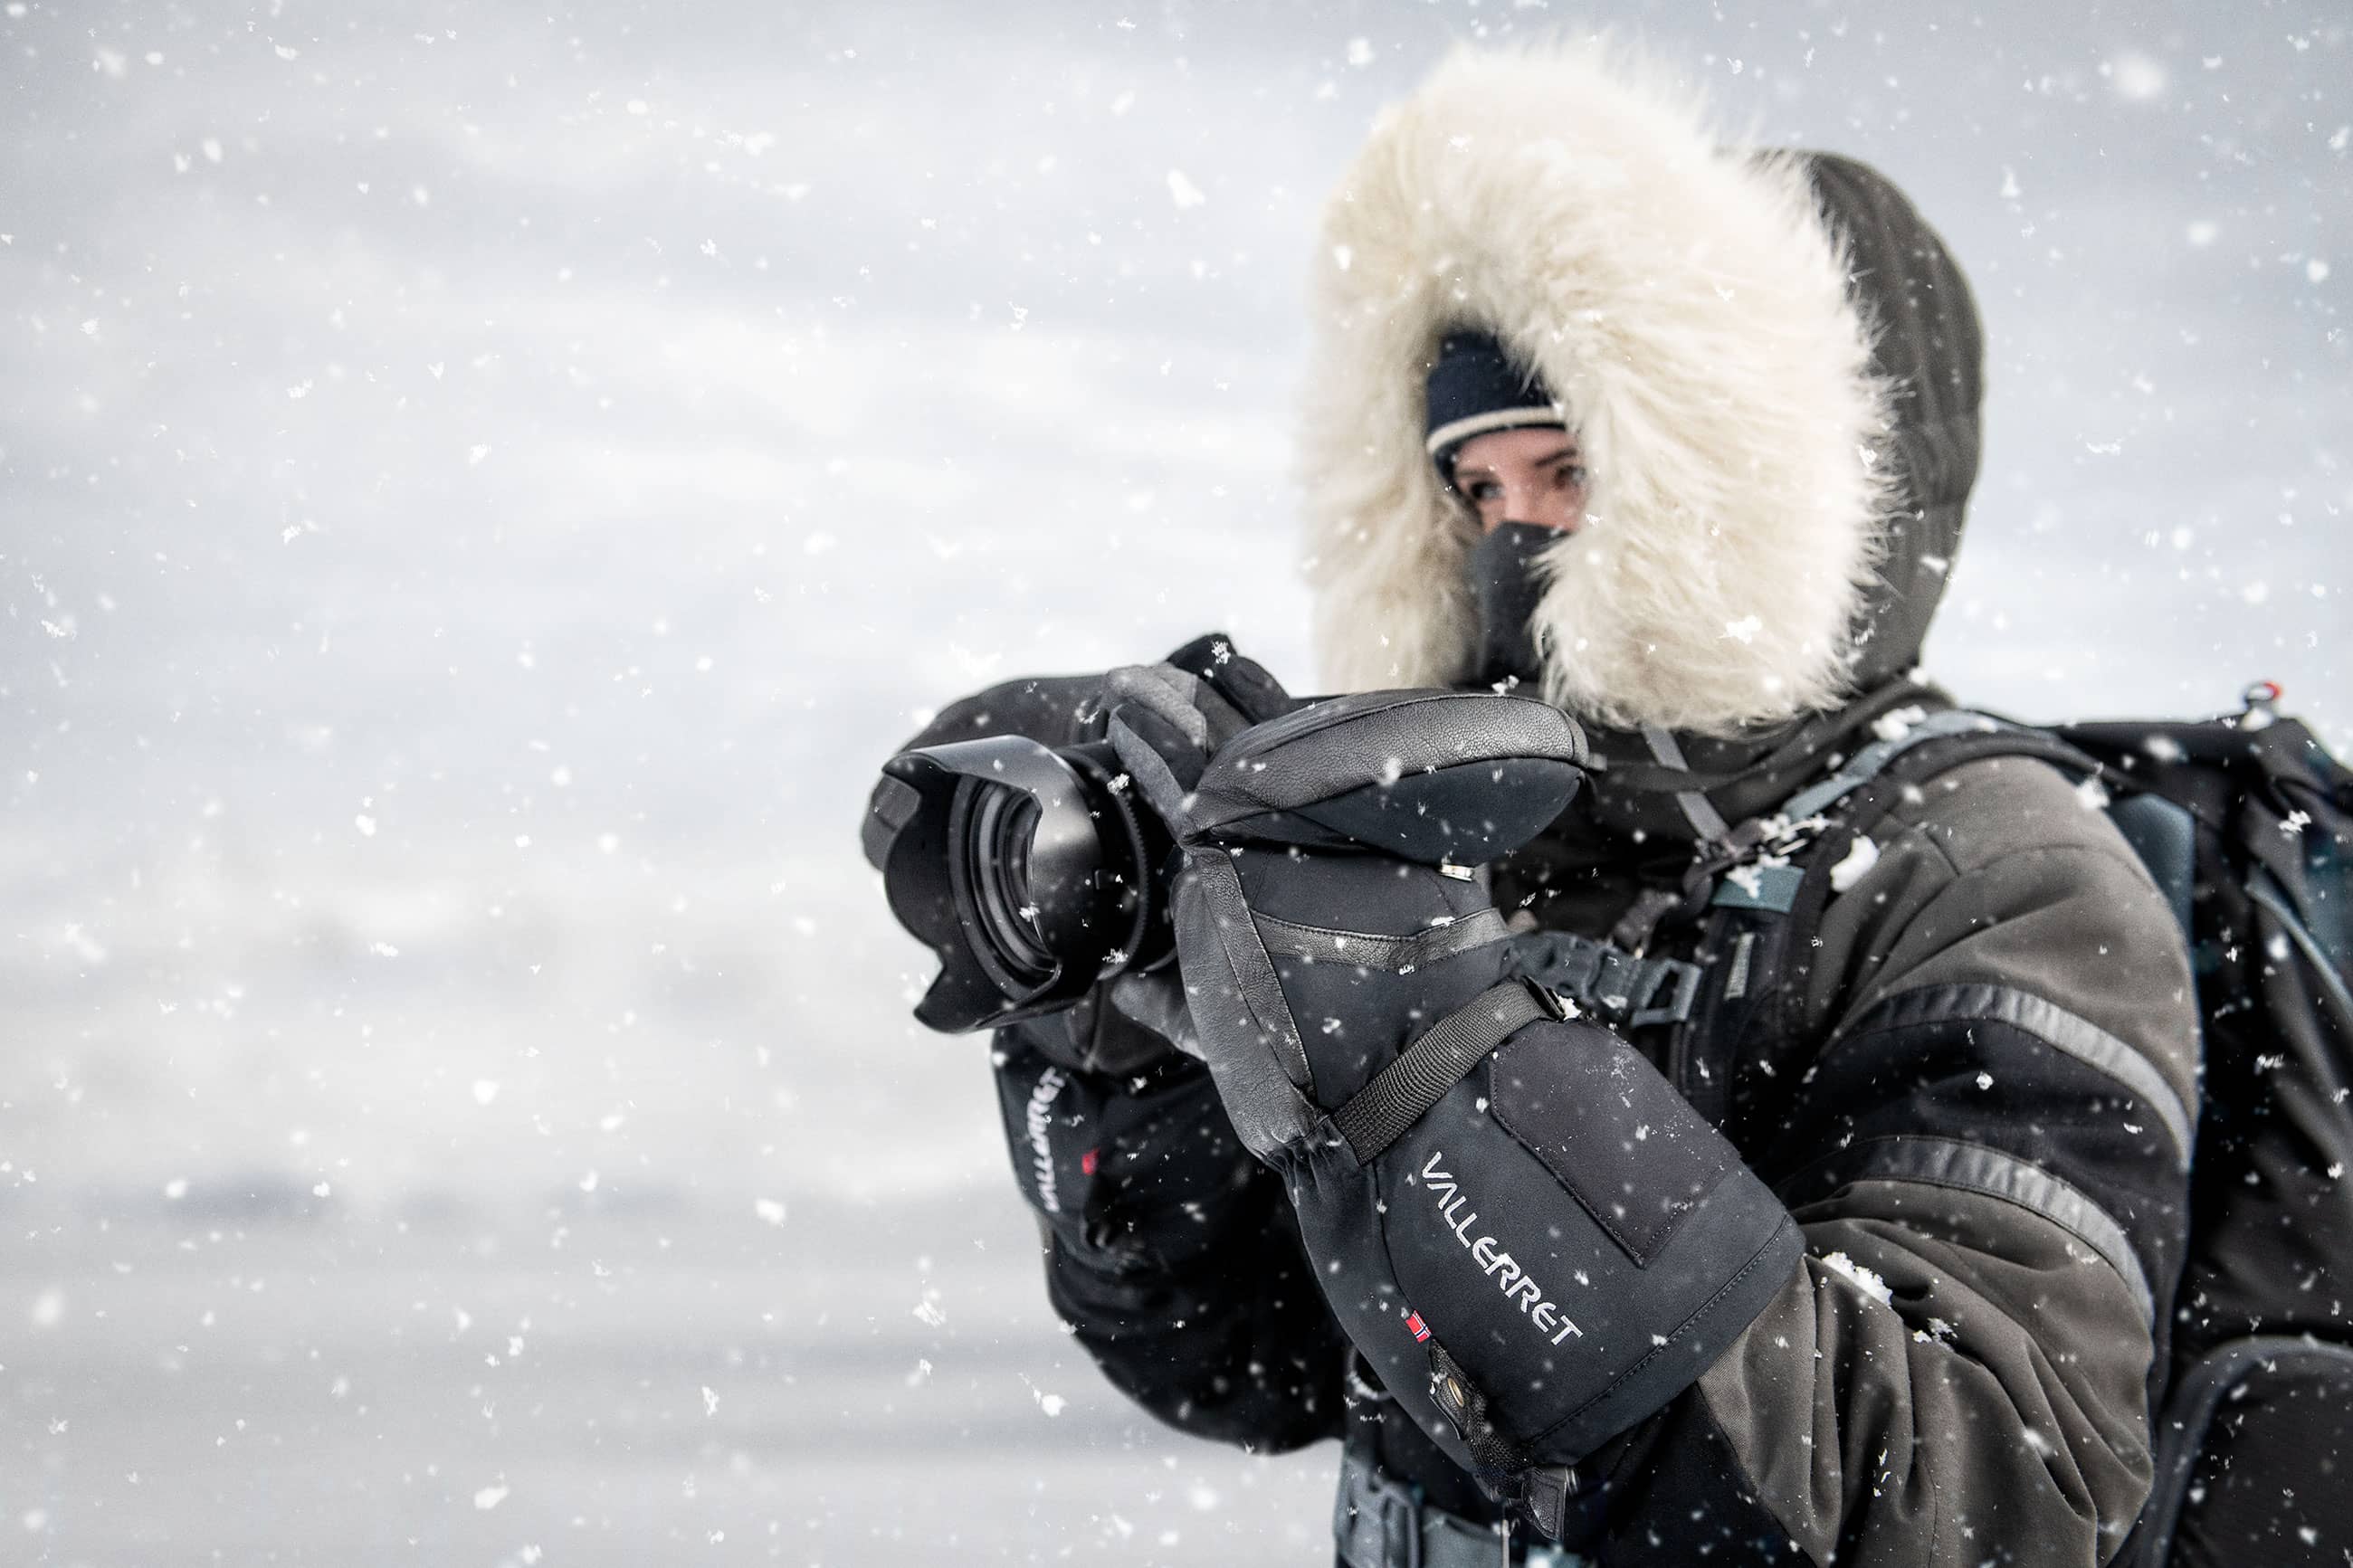 Photographe dans des conditions arctiques